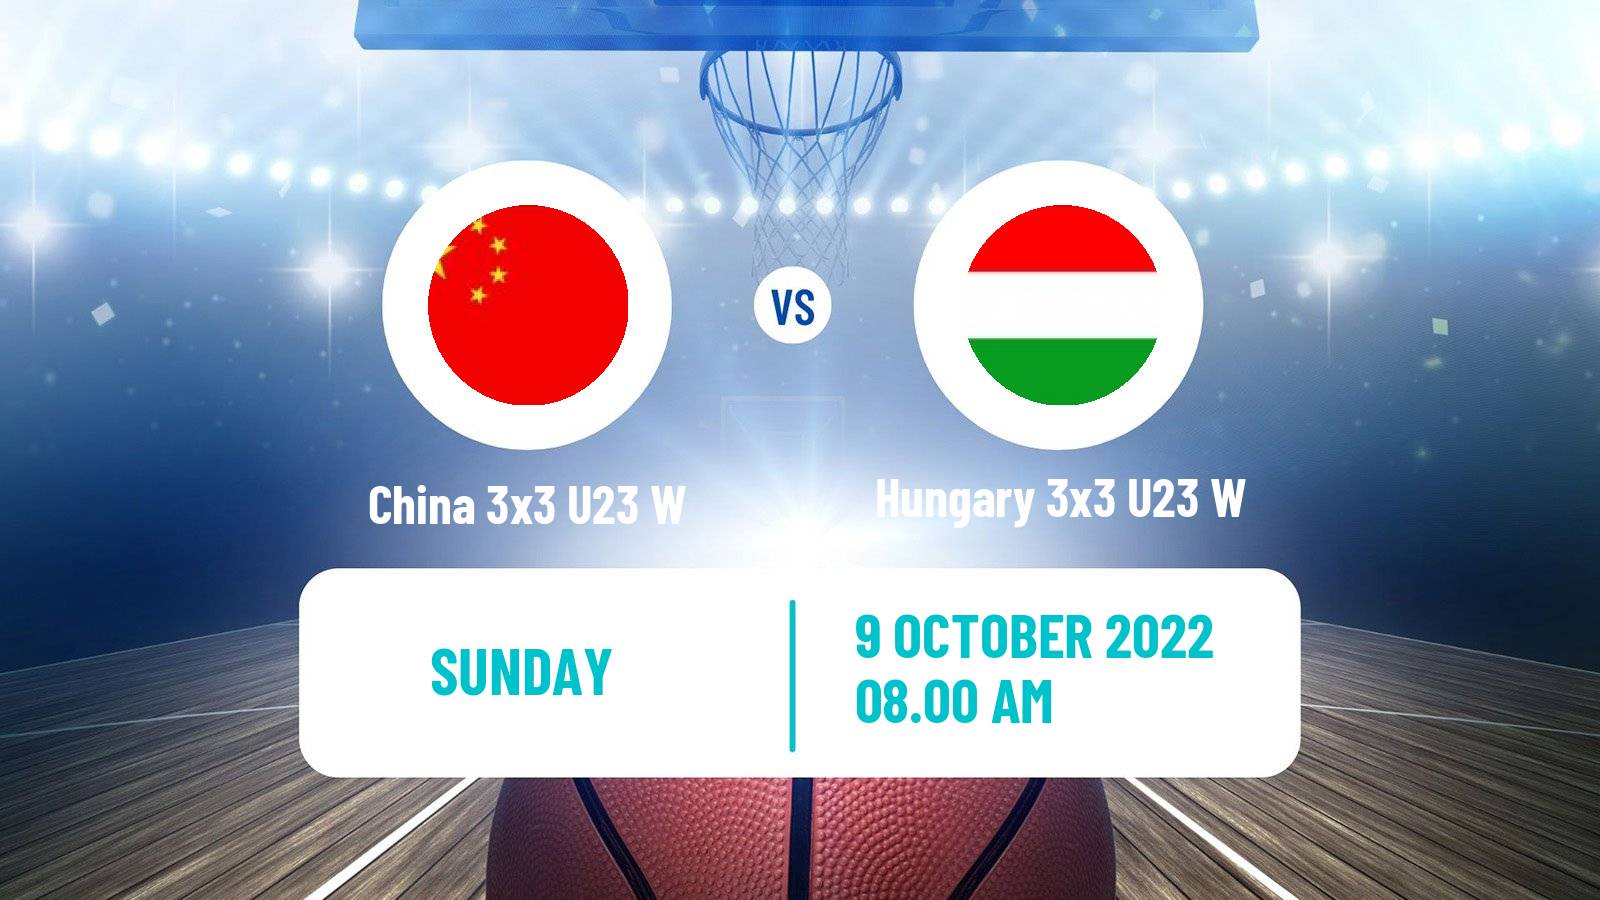 Basketball World Cup Basketball 3x3 U23 Women China 3x3 U23 W - Hungary 3x3 U23 W